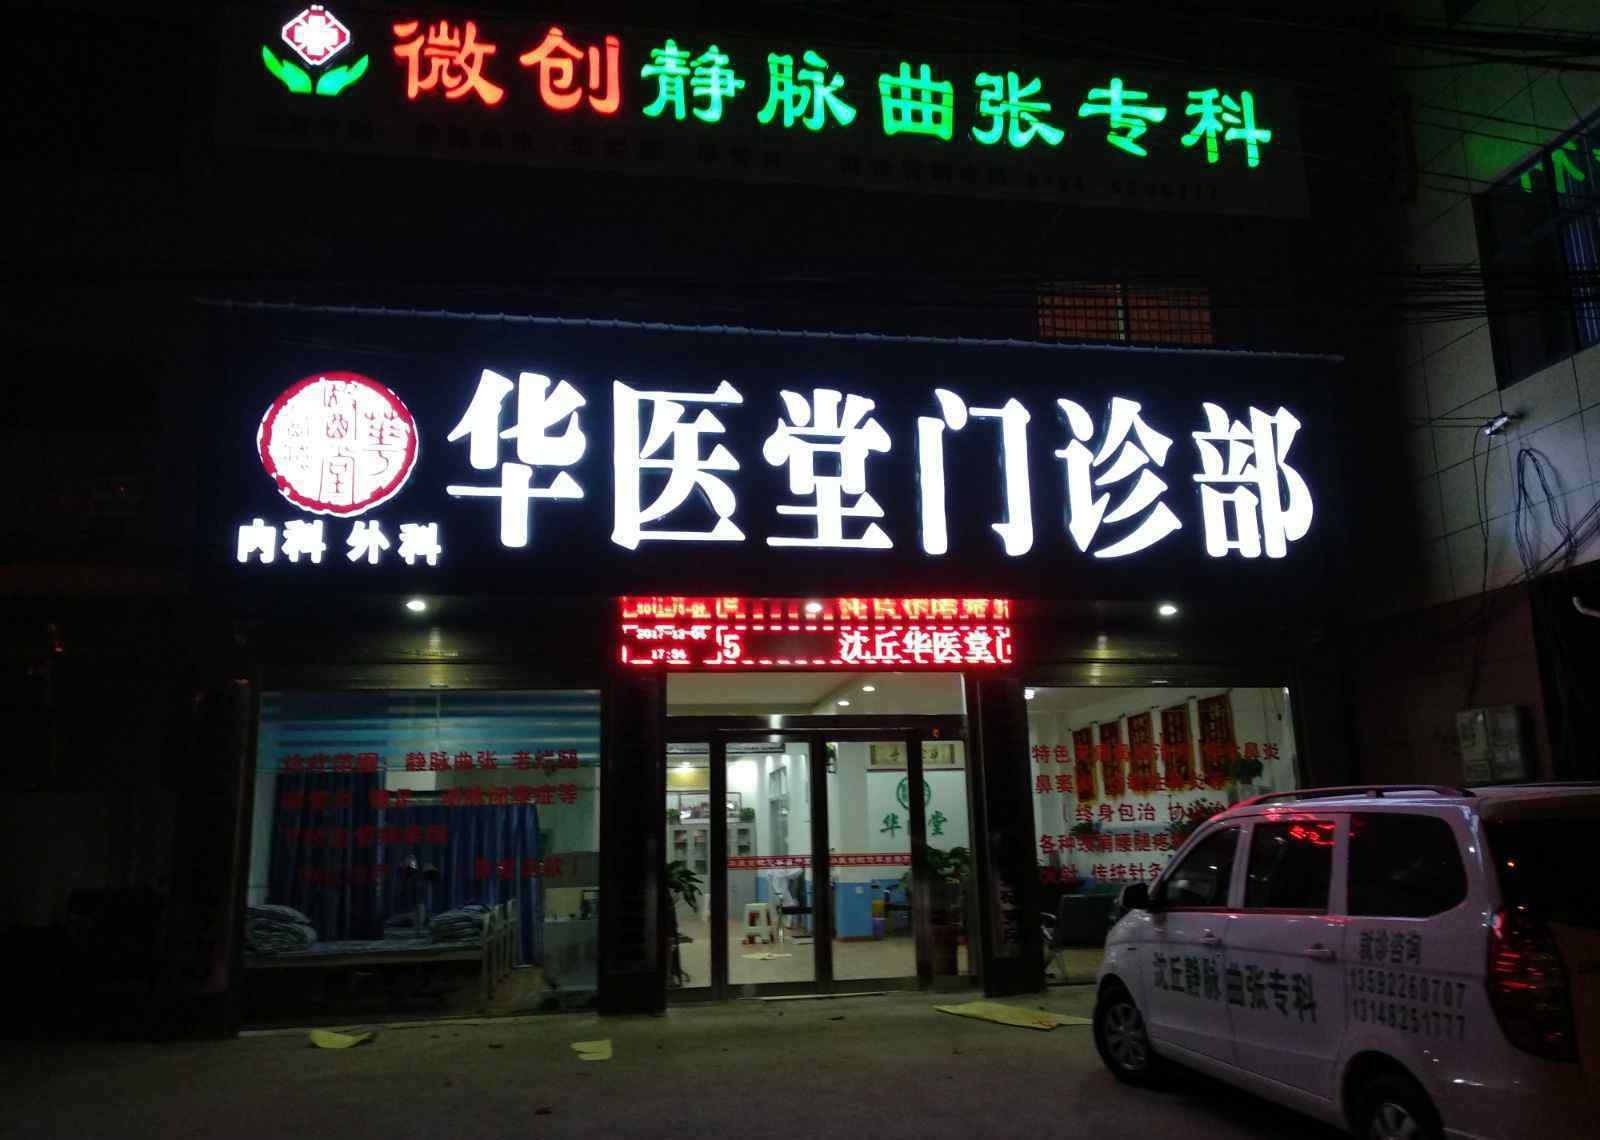 上海静脉曲张研究所 华医堂——为造福静脉曲张患者而生